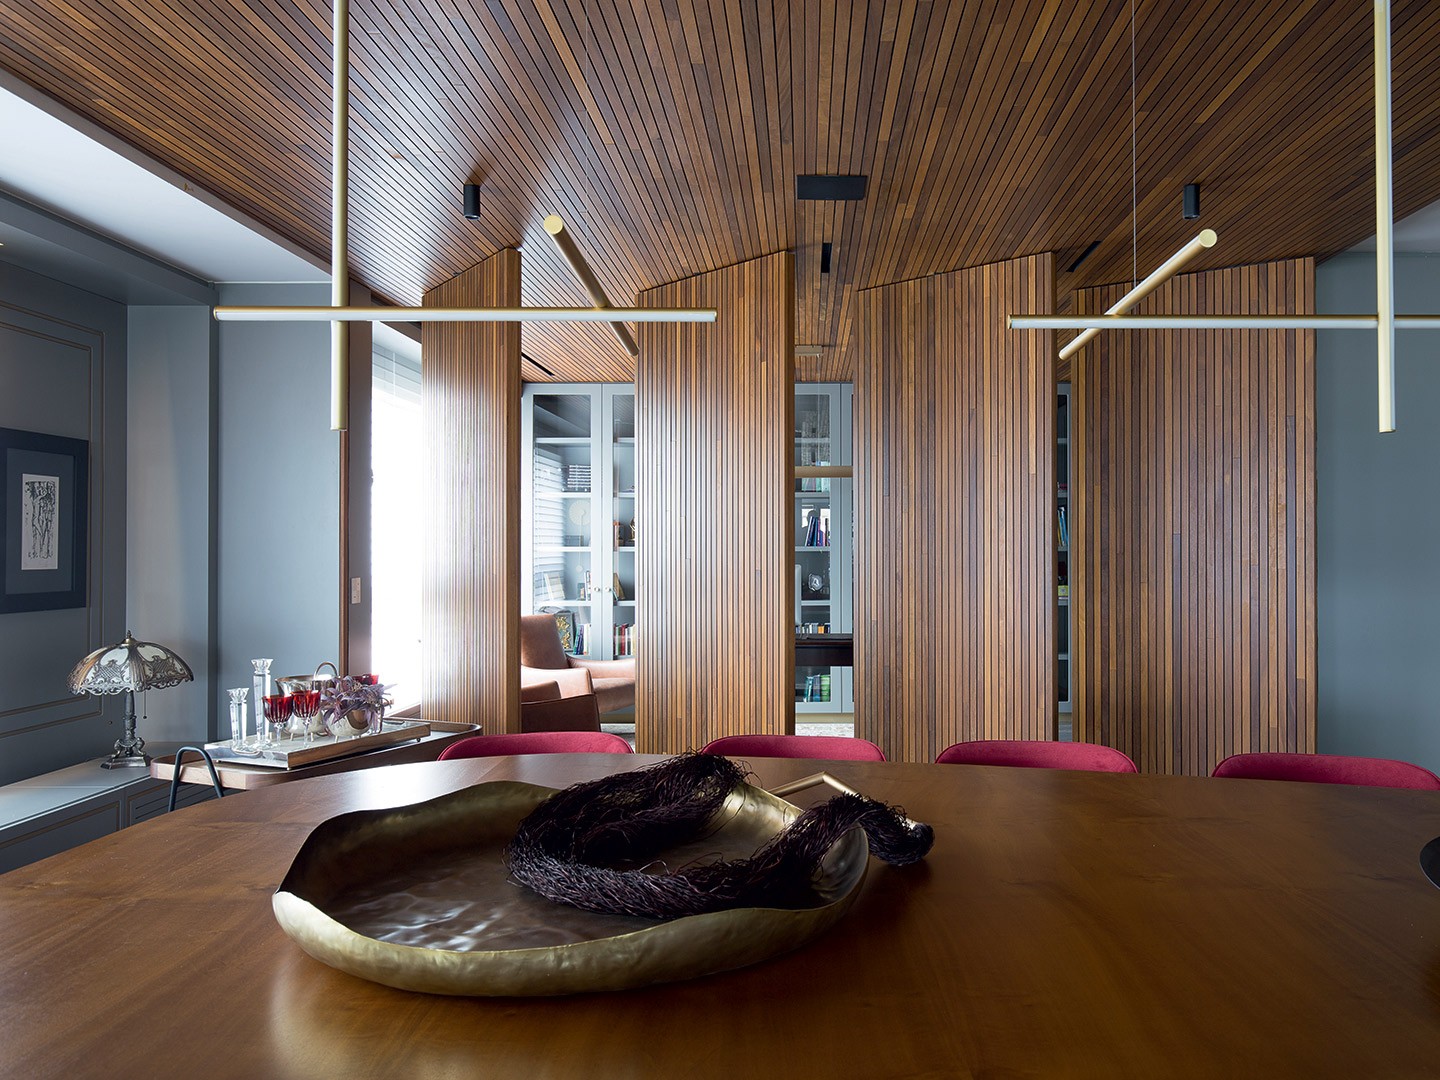 Apartamento de 500 m² ganha marcenaria inteligente e amplitude (Foto: André Bastian/divulgação)